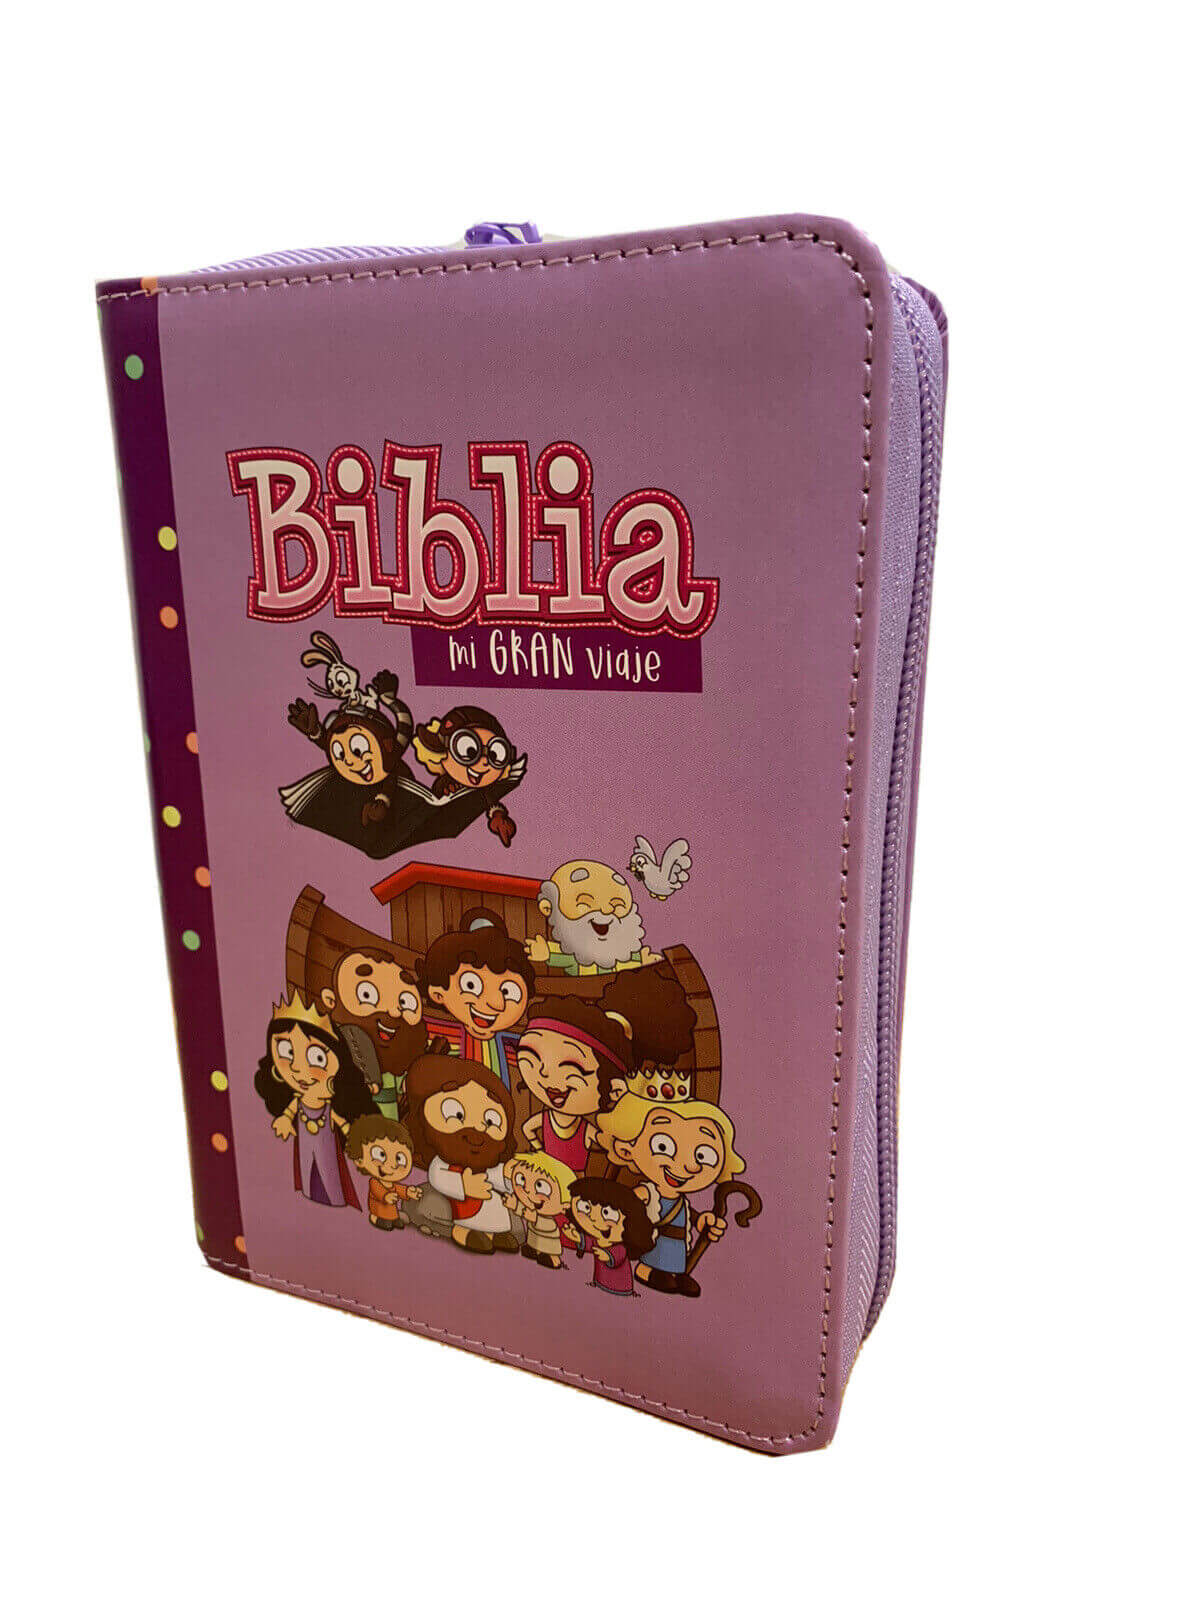 Biblia Reina Valera 1960 para niños Mi gran viaje. Tamaño bolsillo Imitación Piel lila con cierre